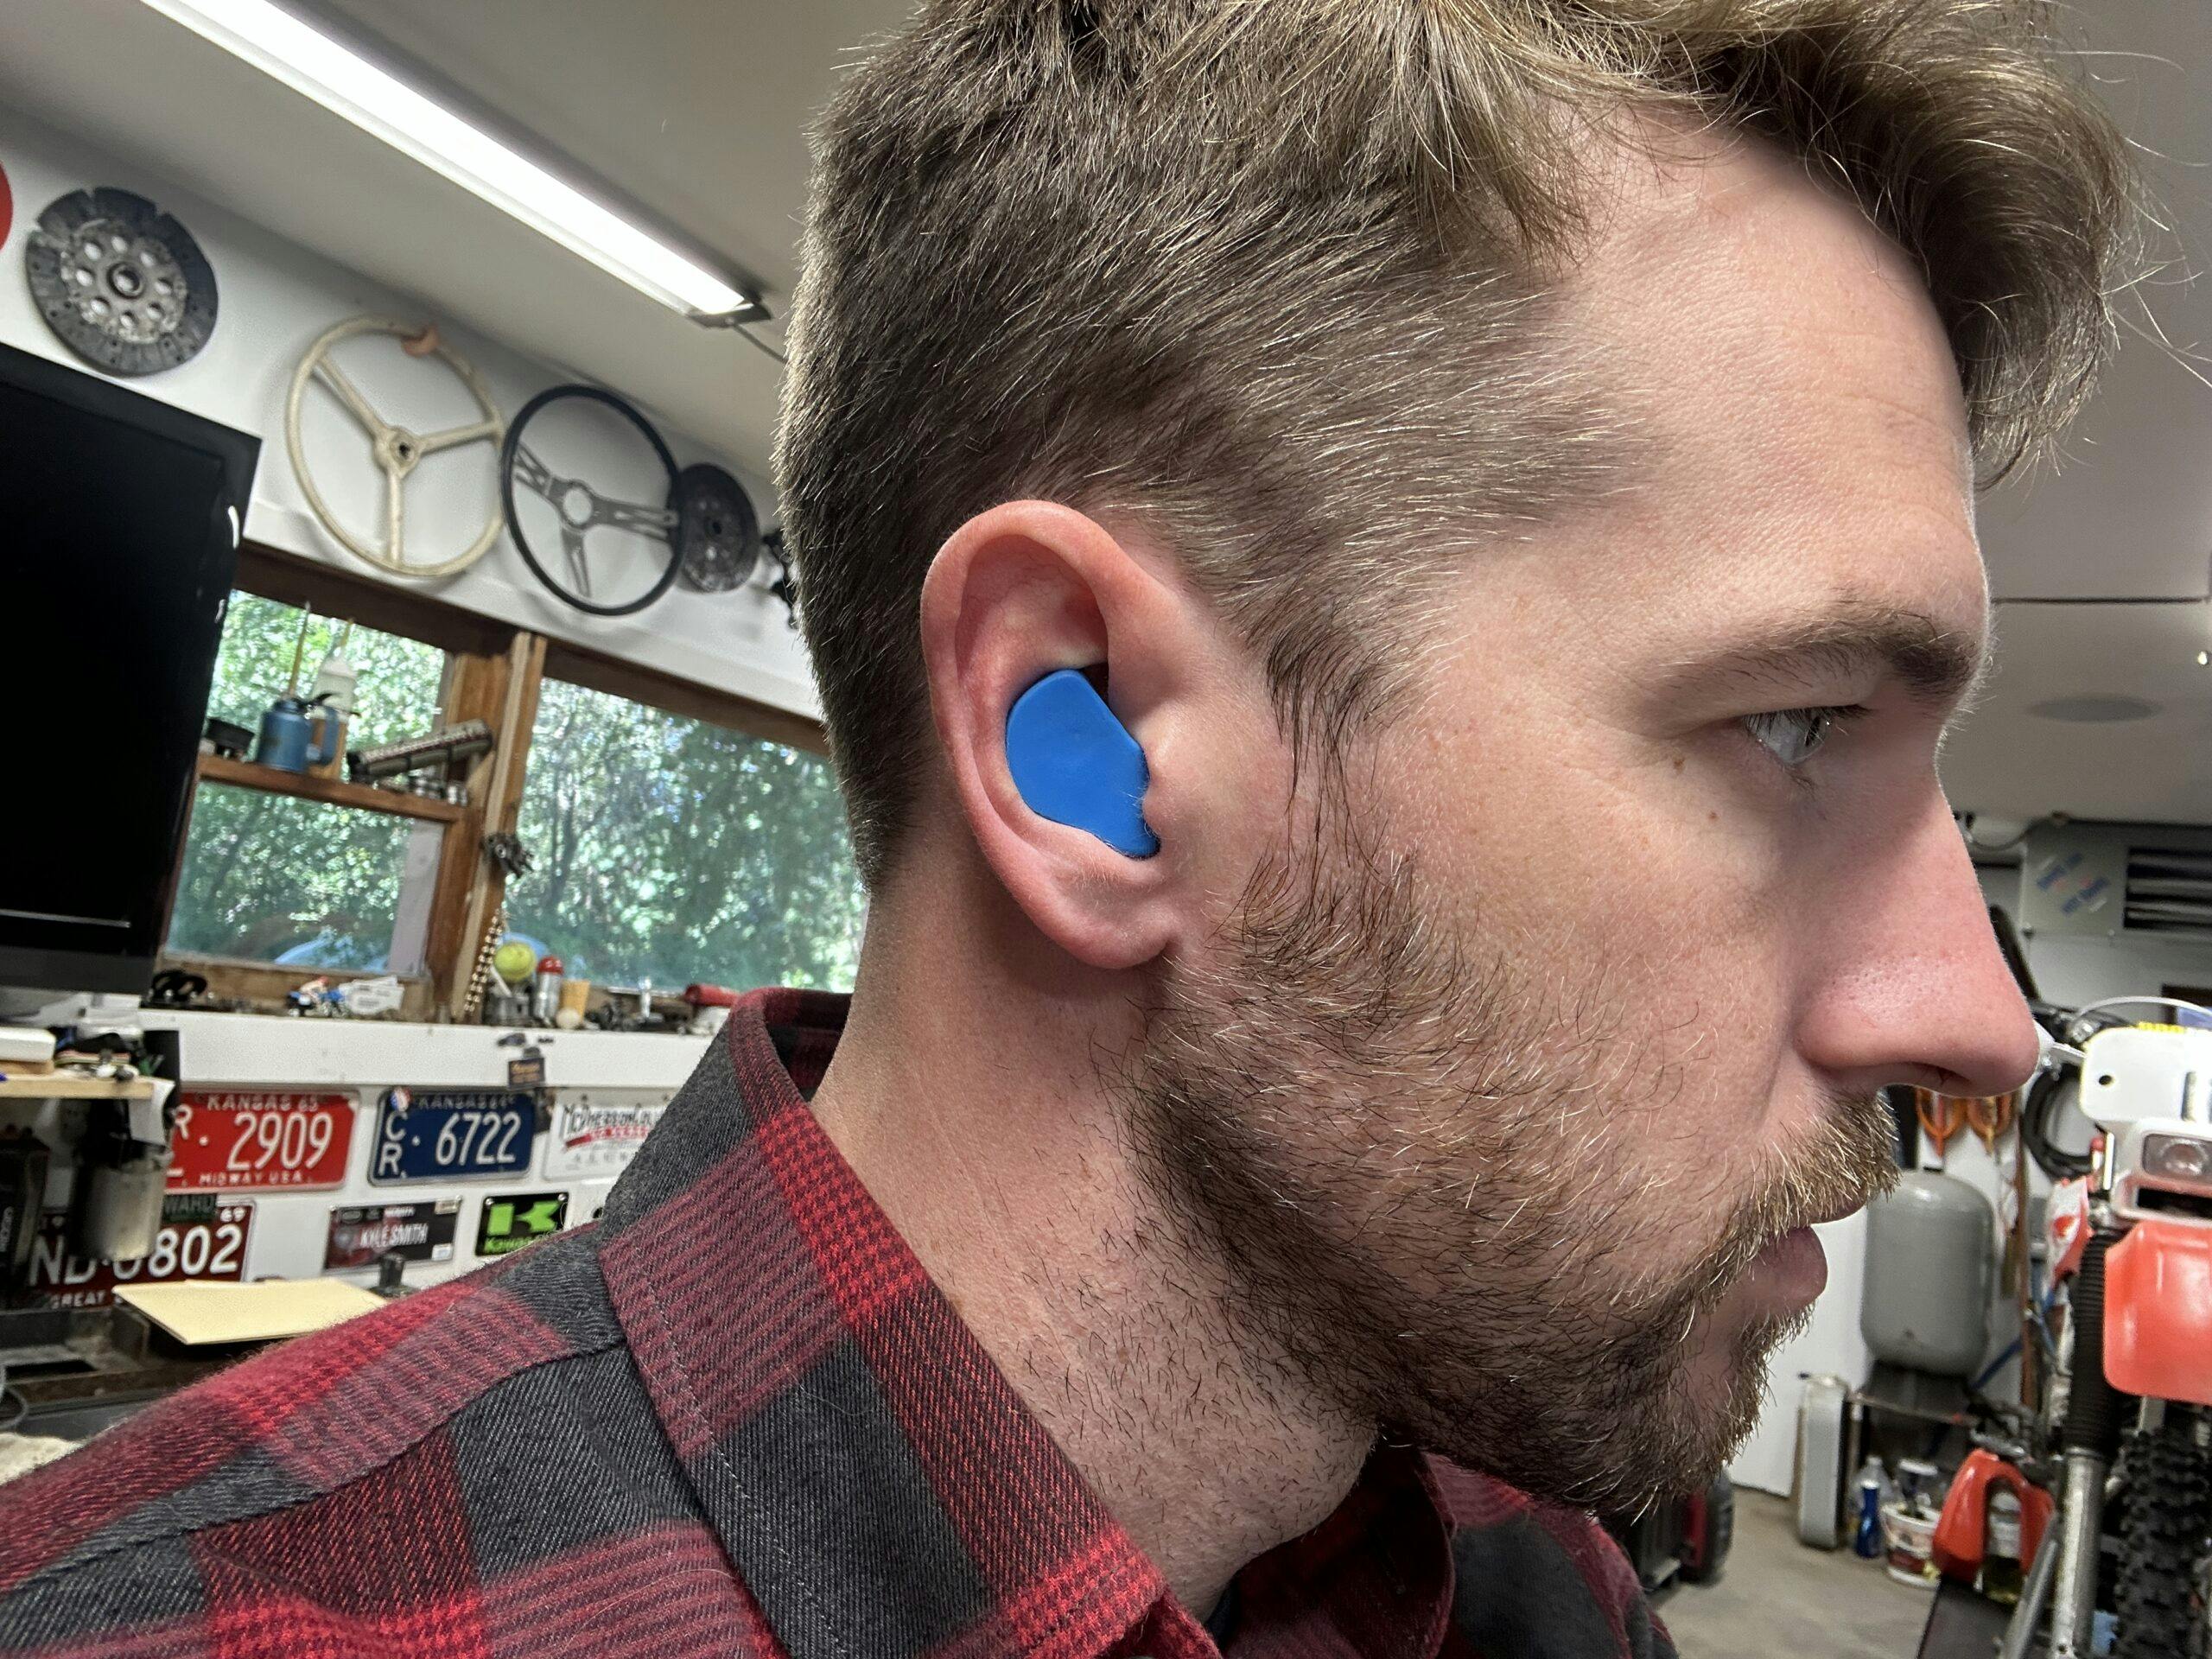 Custom ear plugs in Kyle's ears